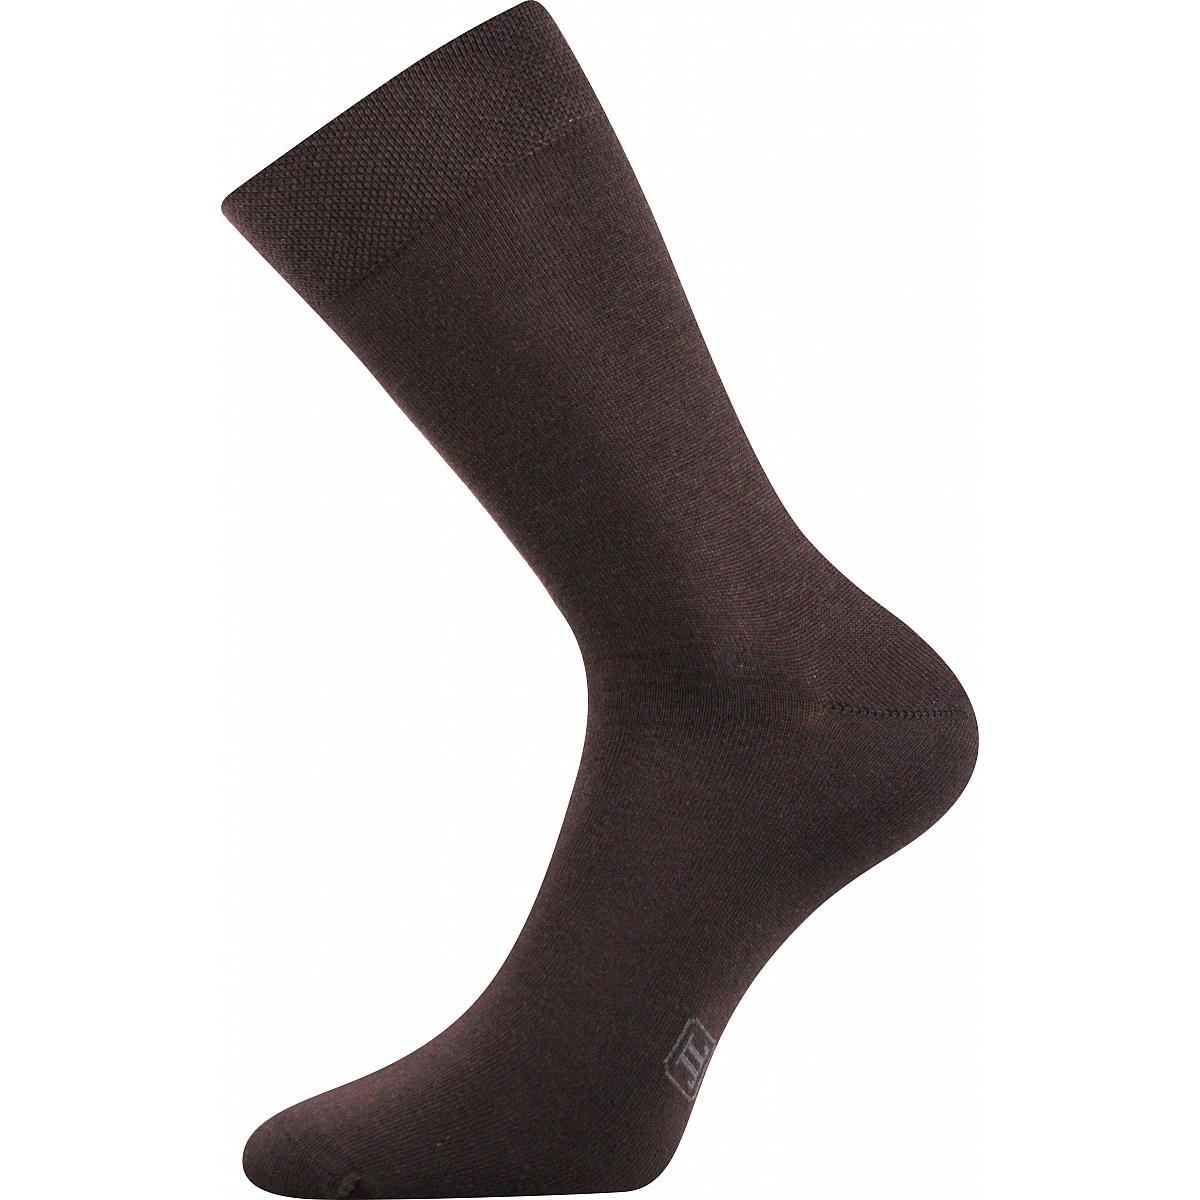 Ponožky pánské Lonka Decolor - hnědé, 39-42